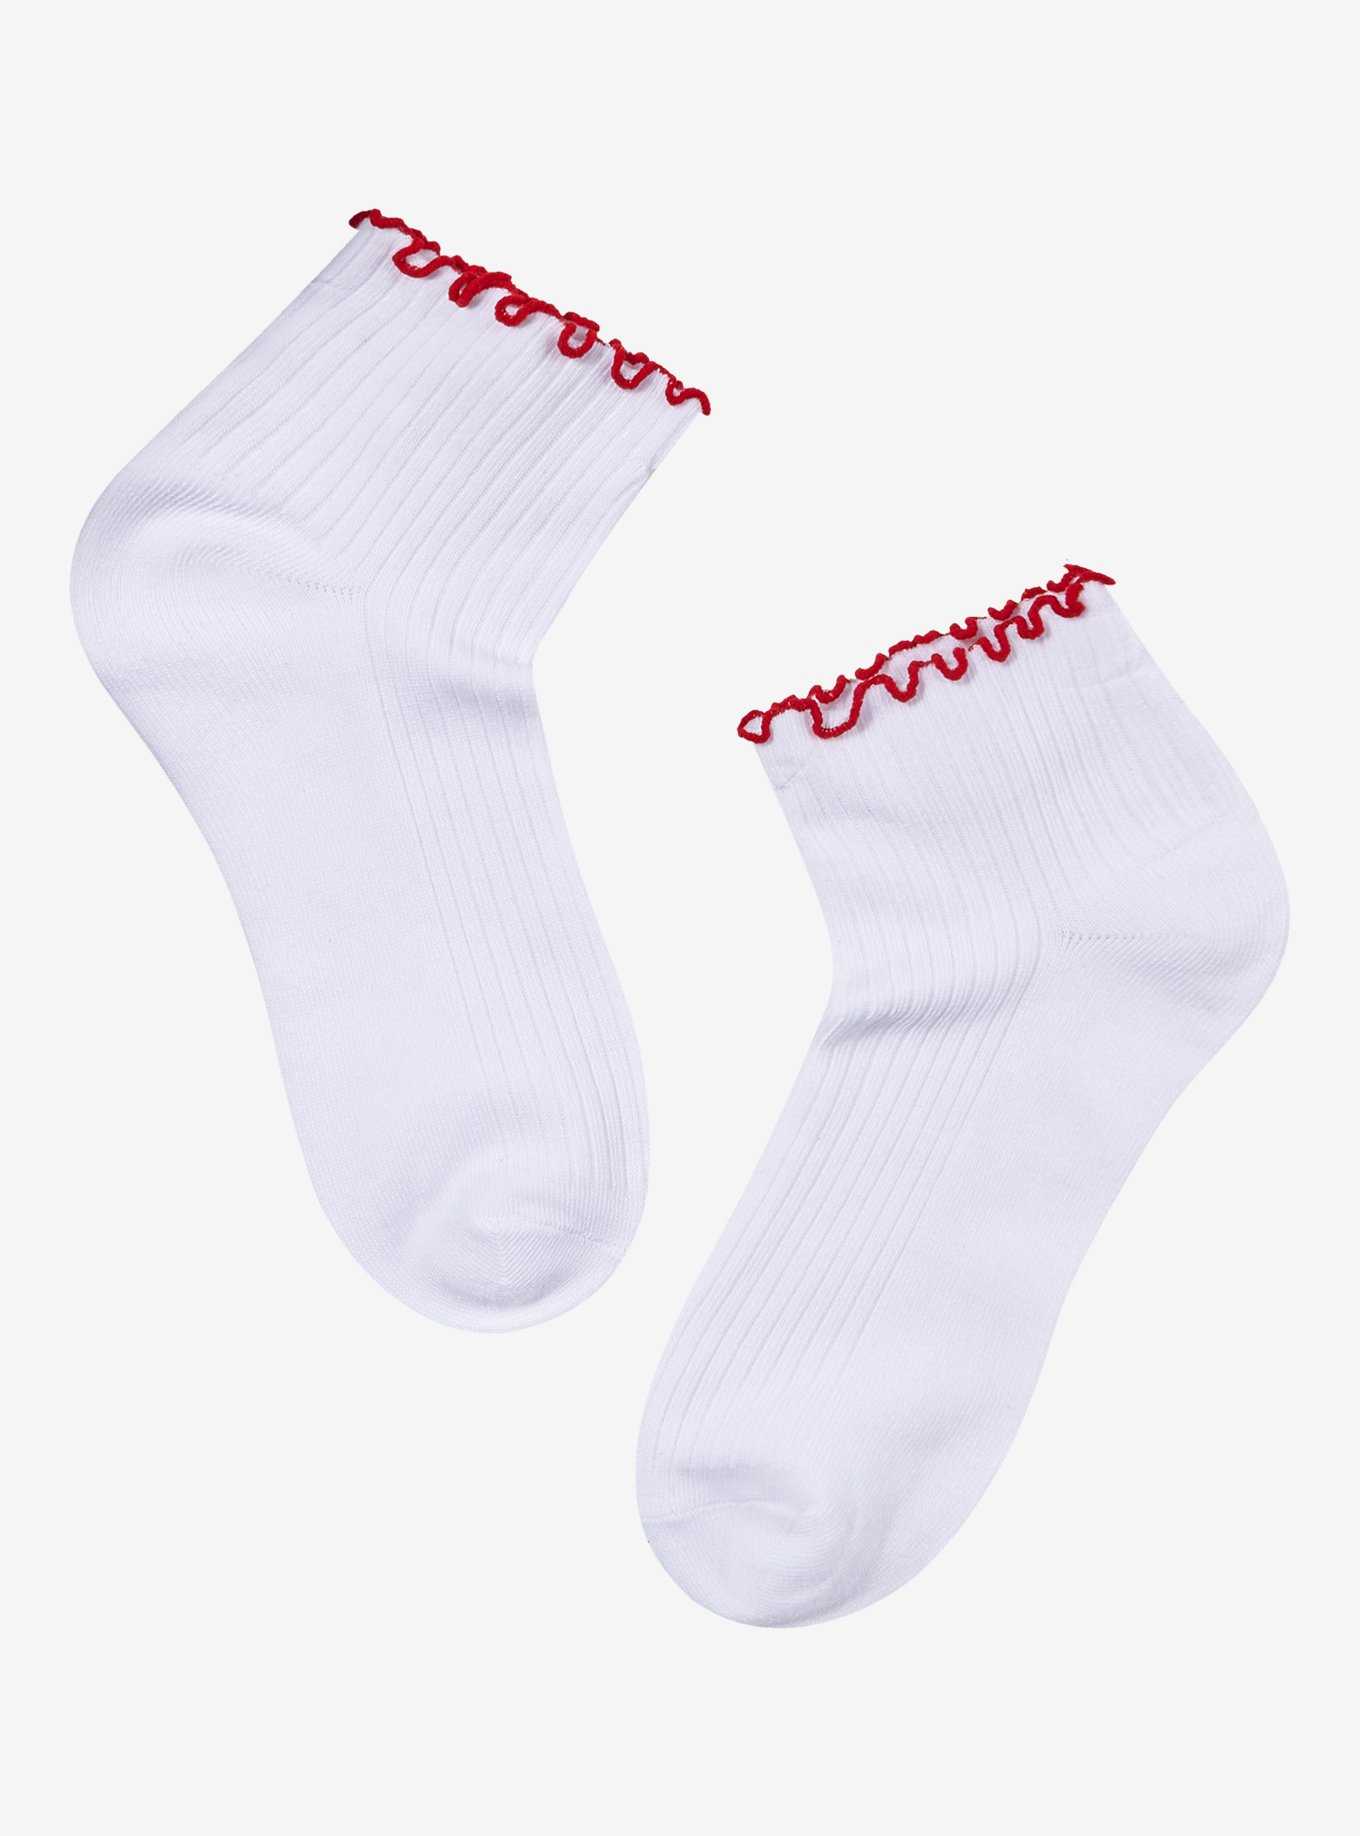 Cherry Crochet Ankle Socks, , hi-res